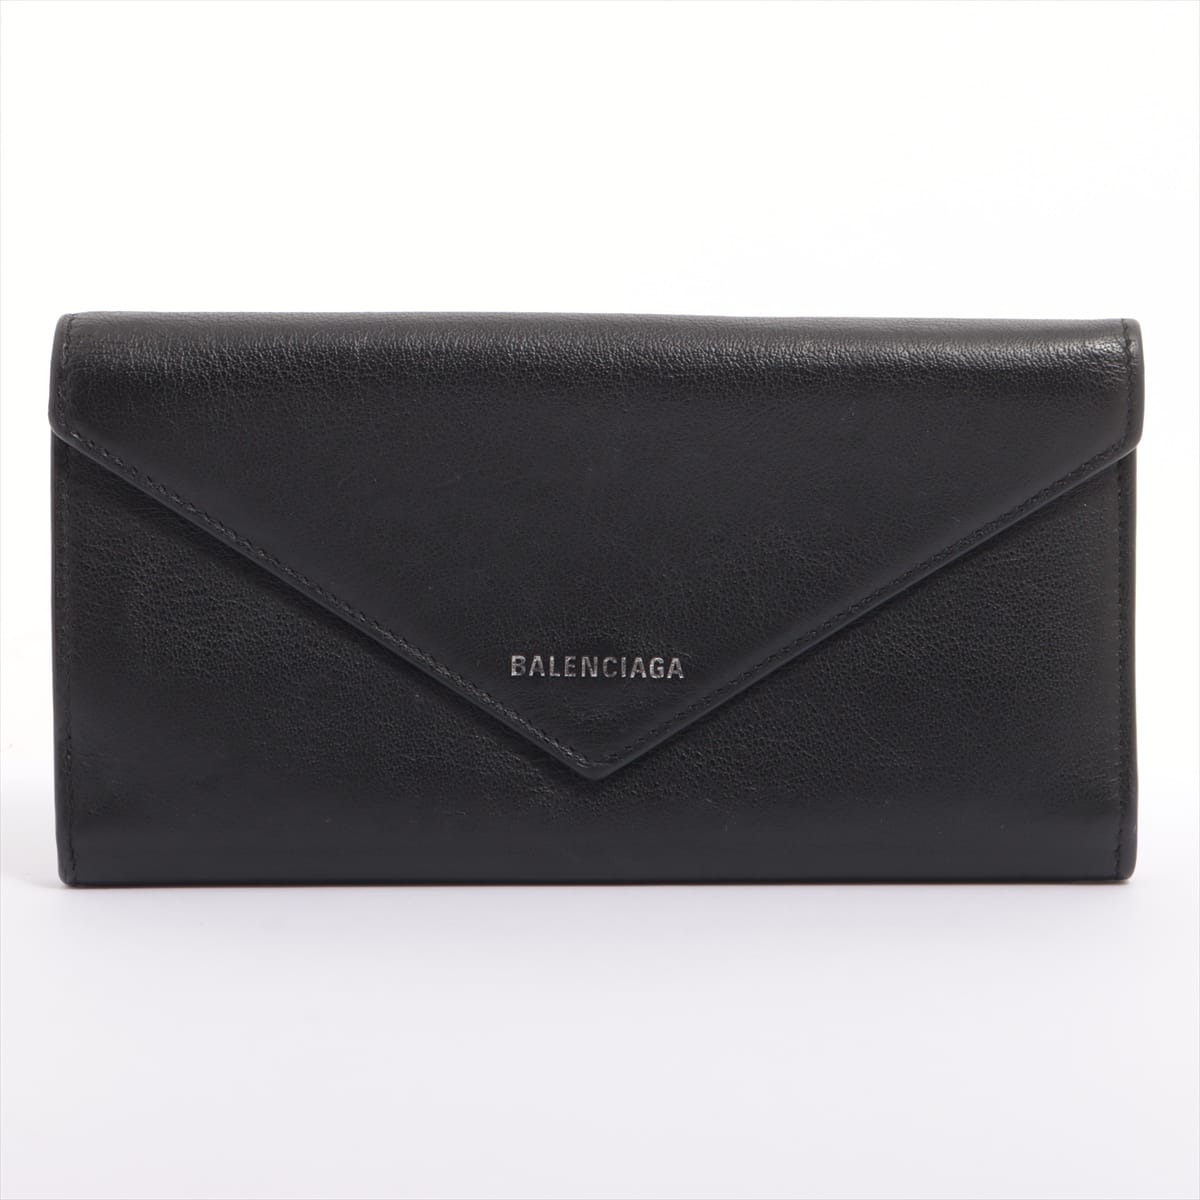 Balenciaga Papier 499207 Leather Wallet Black